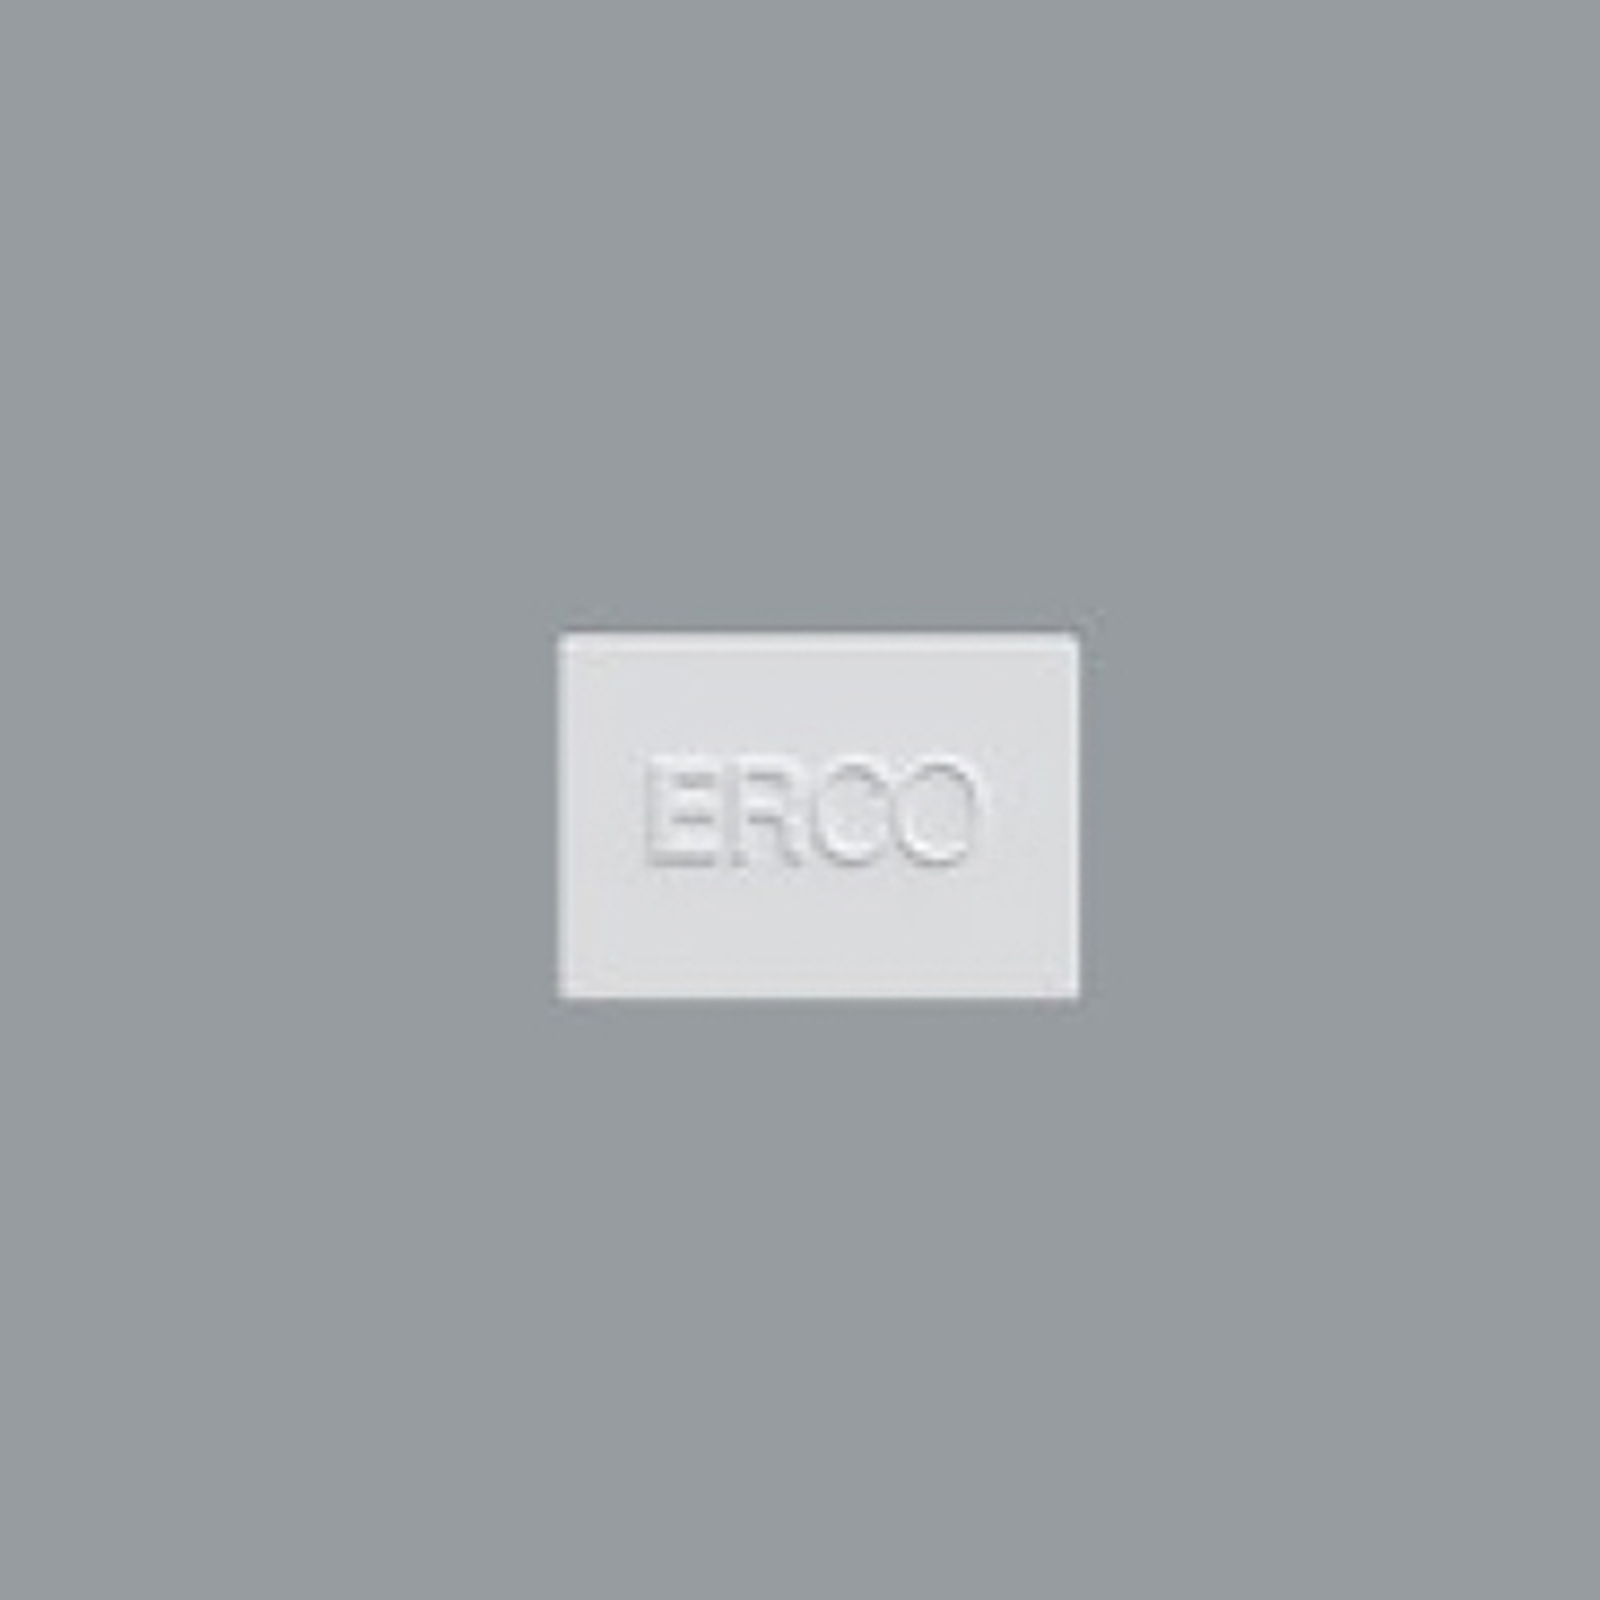 ERCO end plate for Minirail track, white